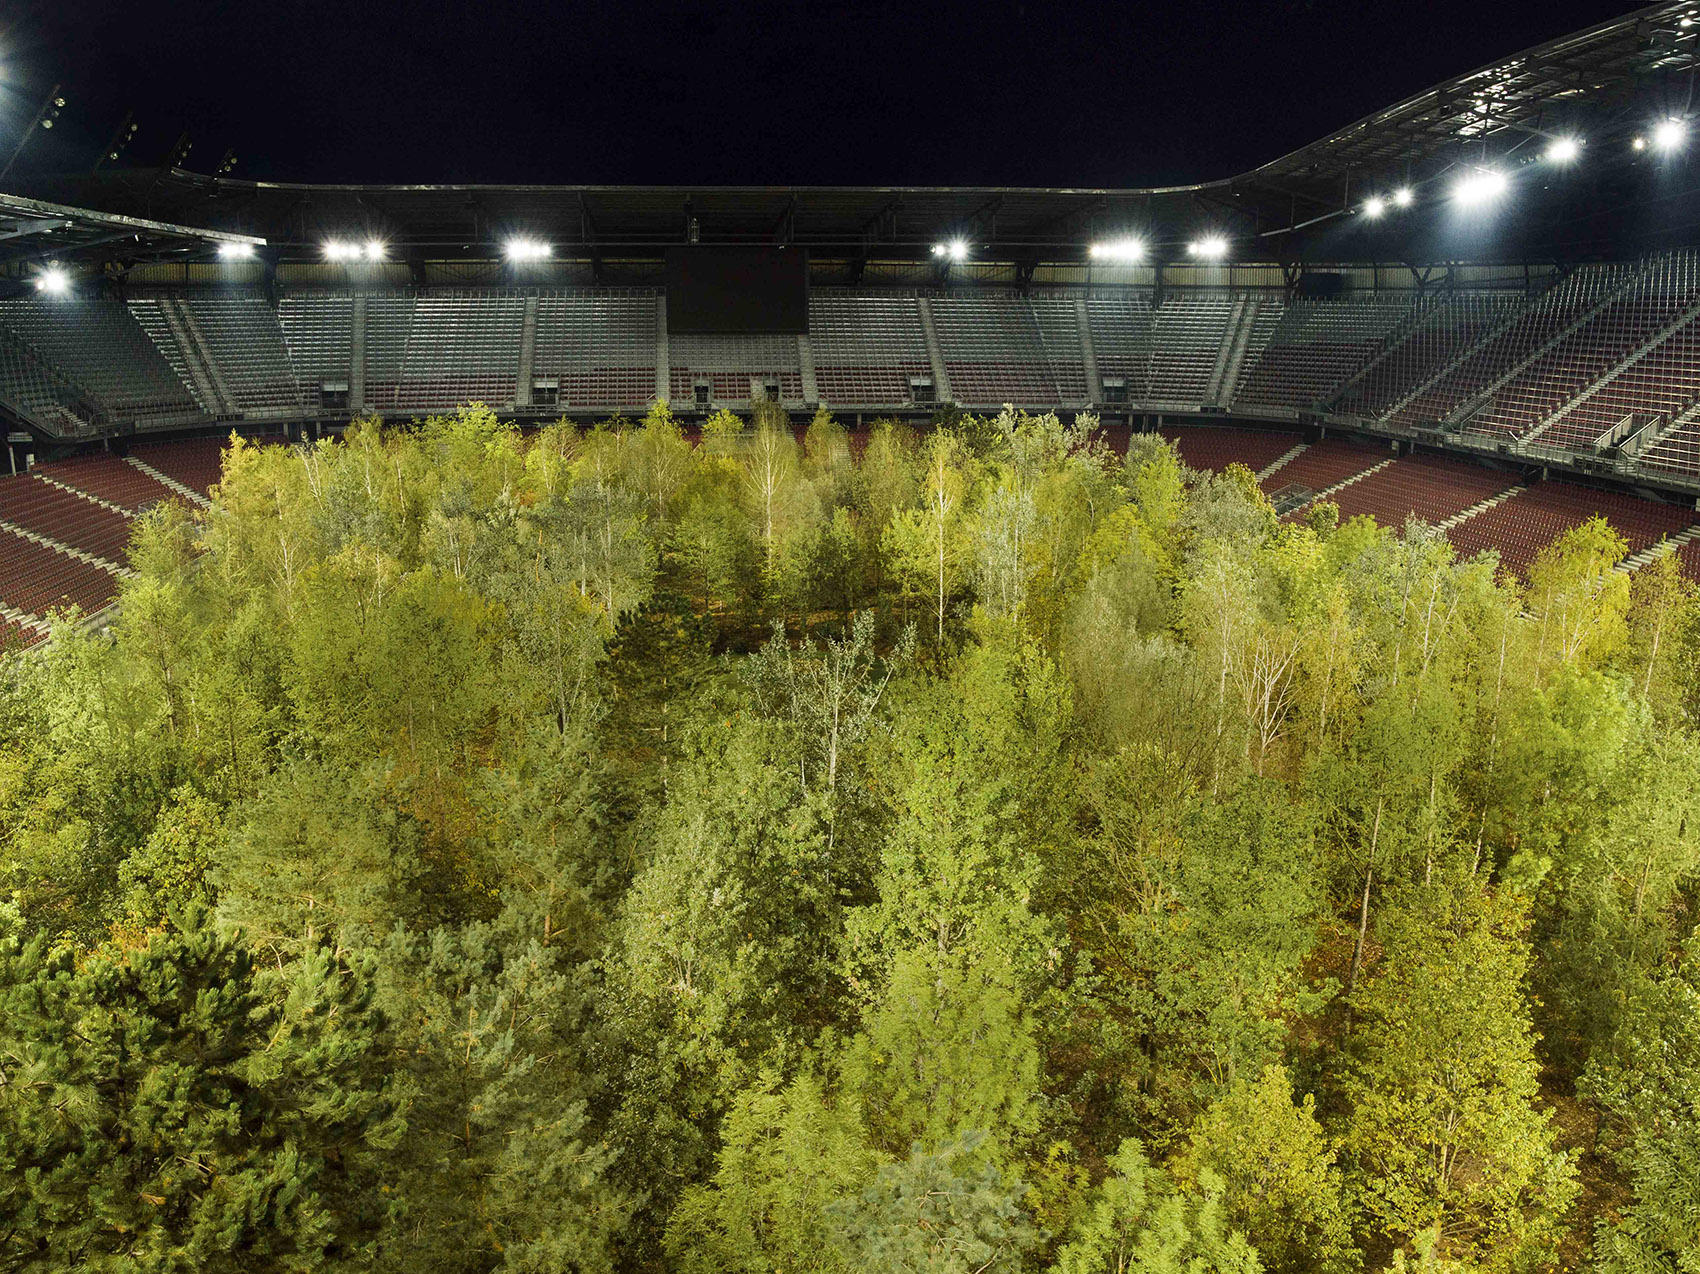 “致森林——自然不倦的魅力”展览，奥地利/足球场变身欧洲中部森林-23